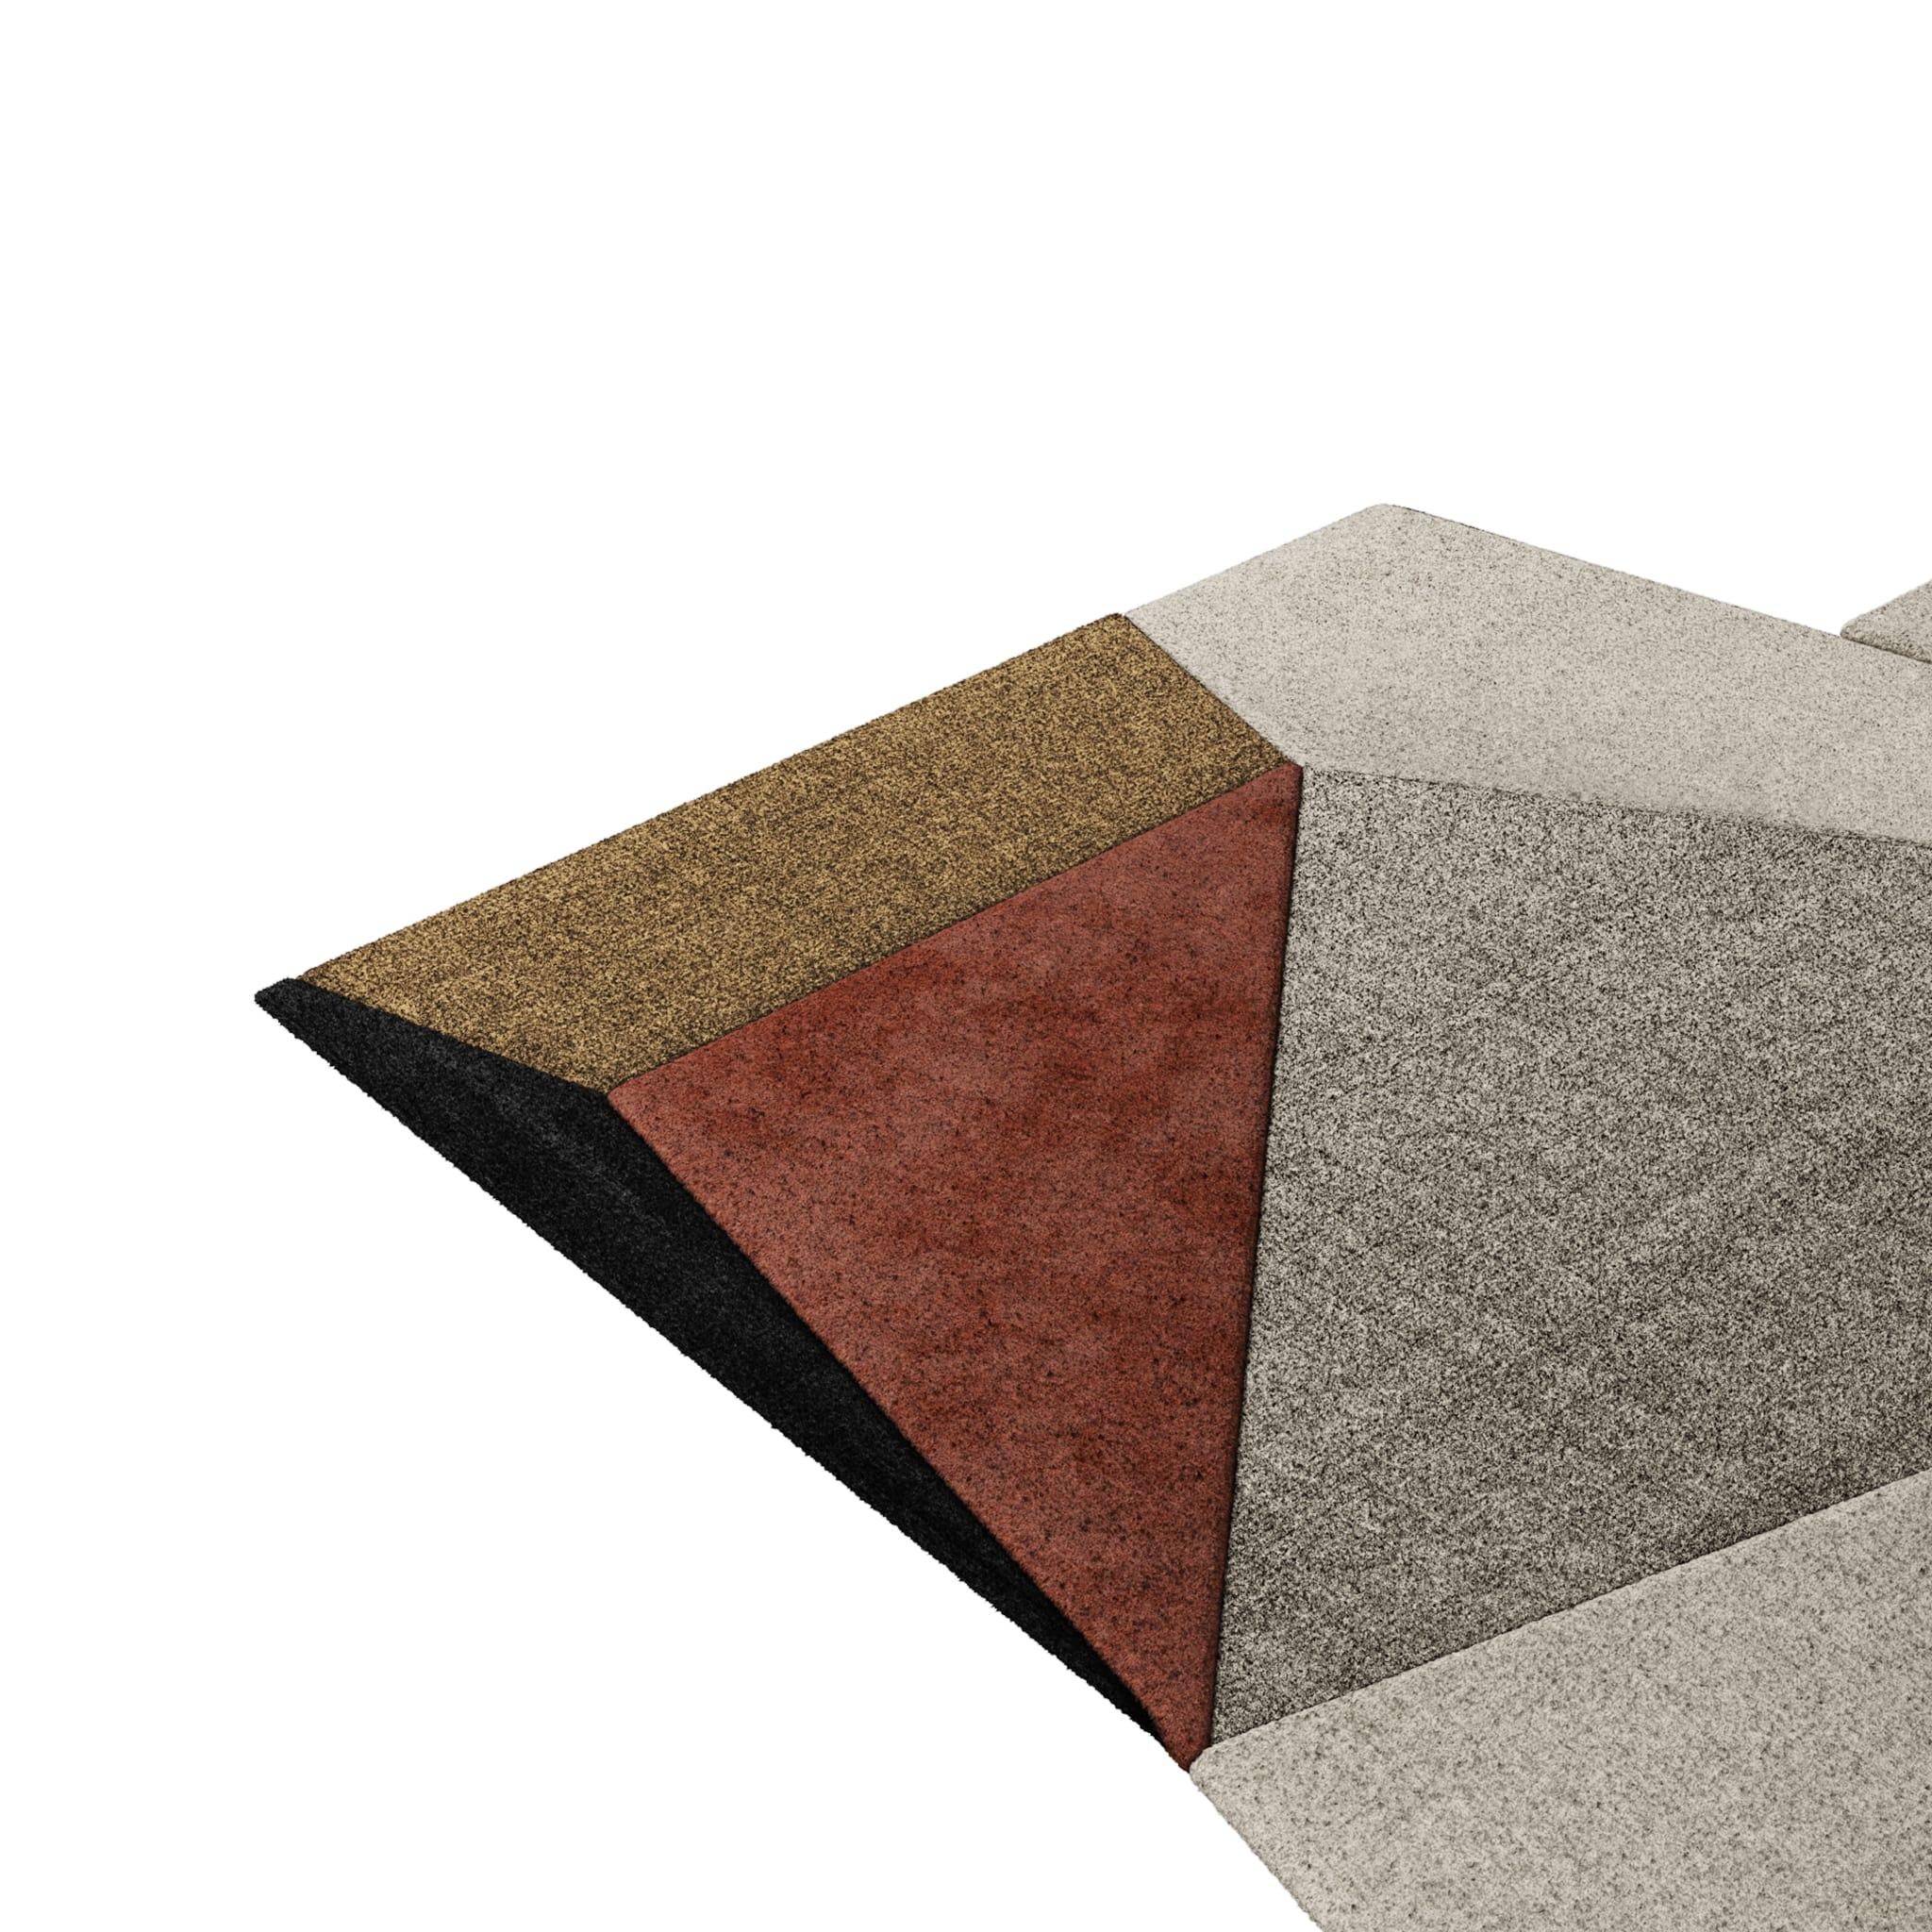 Tapis Retro #001 ist ein Retro-Teppich mit einer unregelmäßigen Form und neutralen Farben. Inspiriert von architektonischen Linien, setzt dieser Recto-Teppich in jedem Wohnbereich ein Zeichen. 

Mit einer 3D-Tufting-Technik, die Schnitt- und